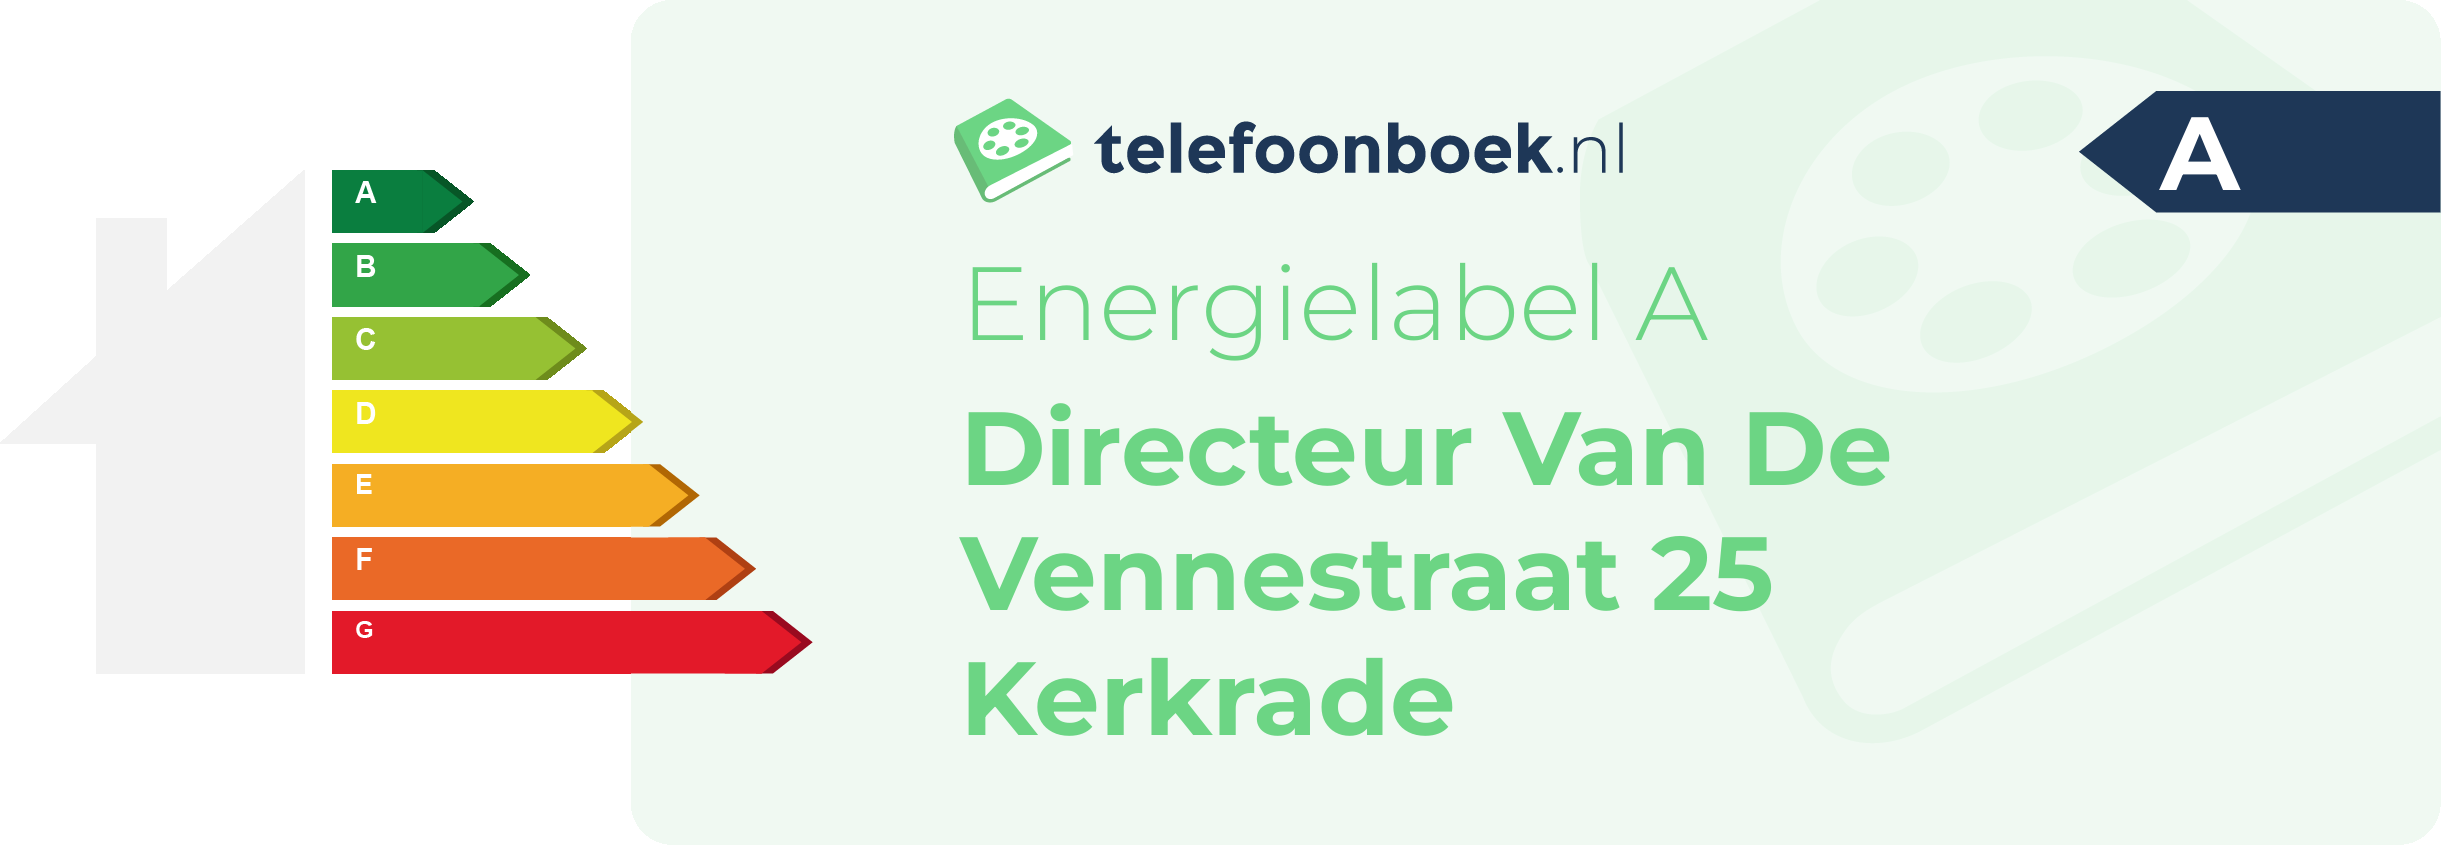 Energielabel Directeur Van De Vennestraat 25 Kerkrade